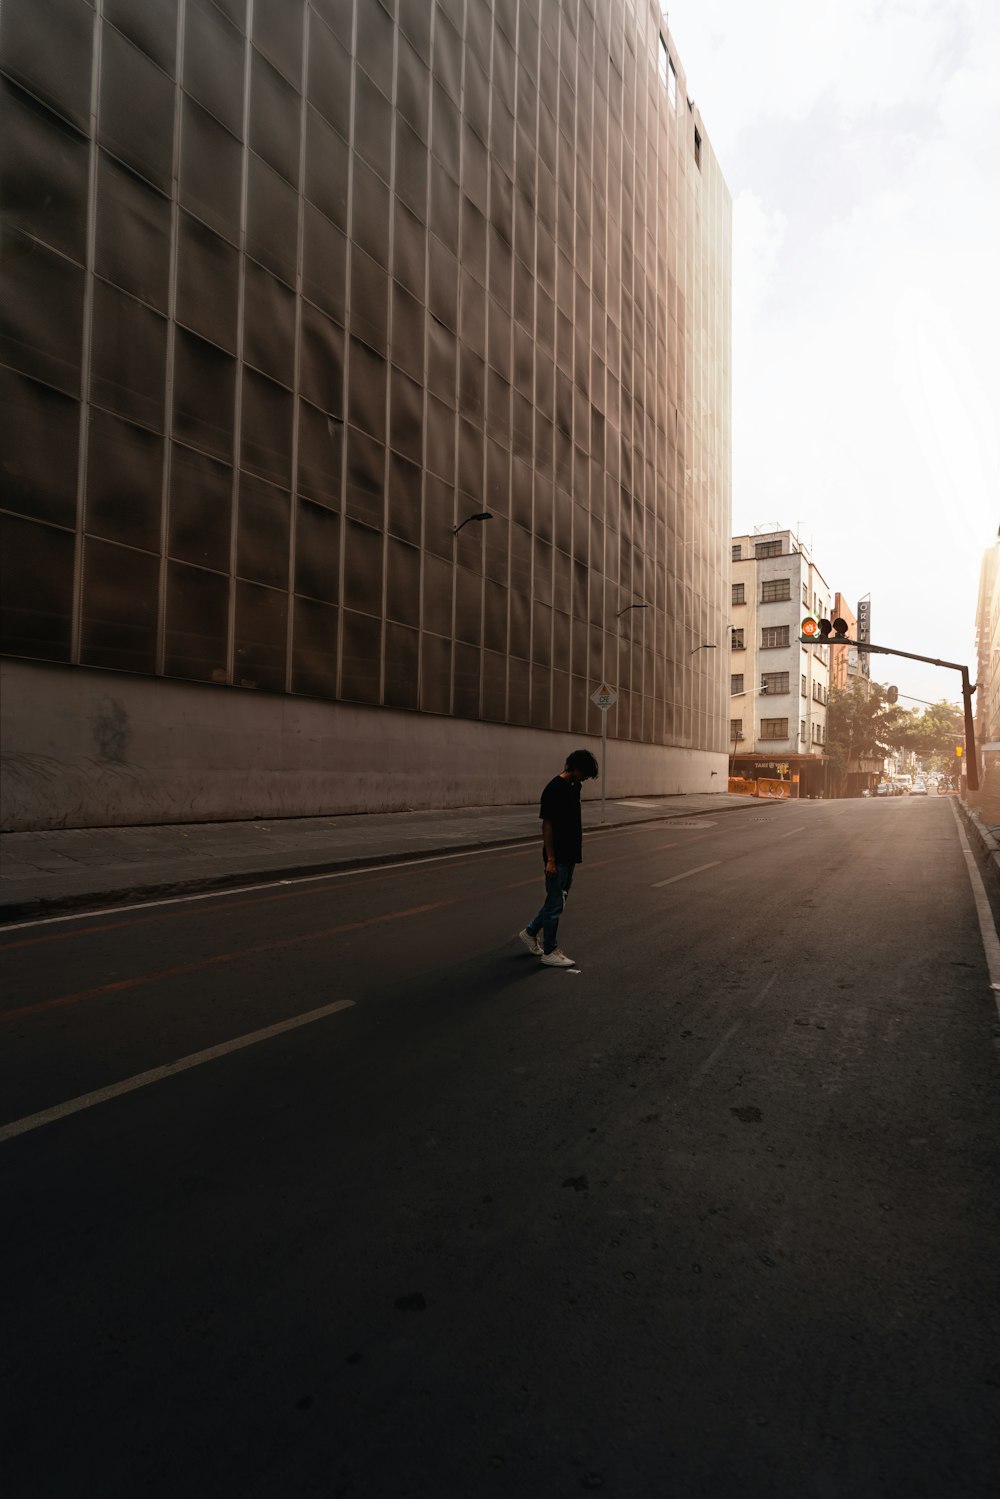 Ein Mann, der auf einem Skateboard eine Straße neben hohen Gebäuden hinunterfährt